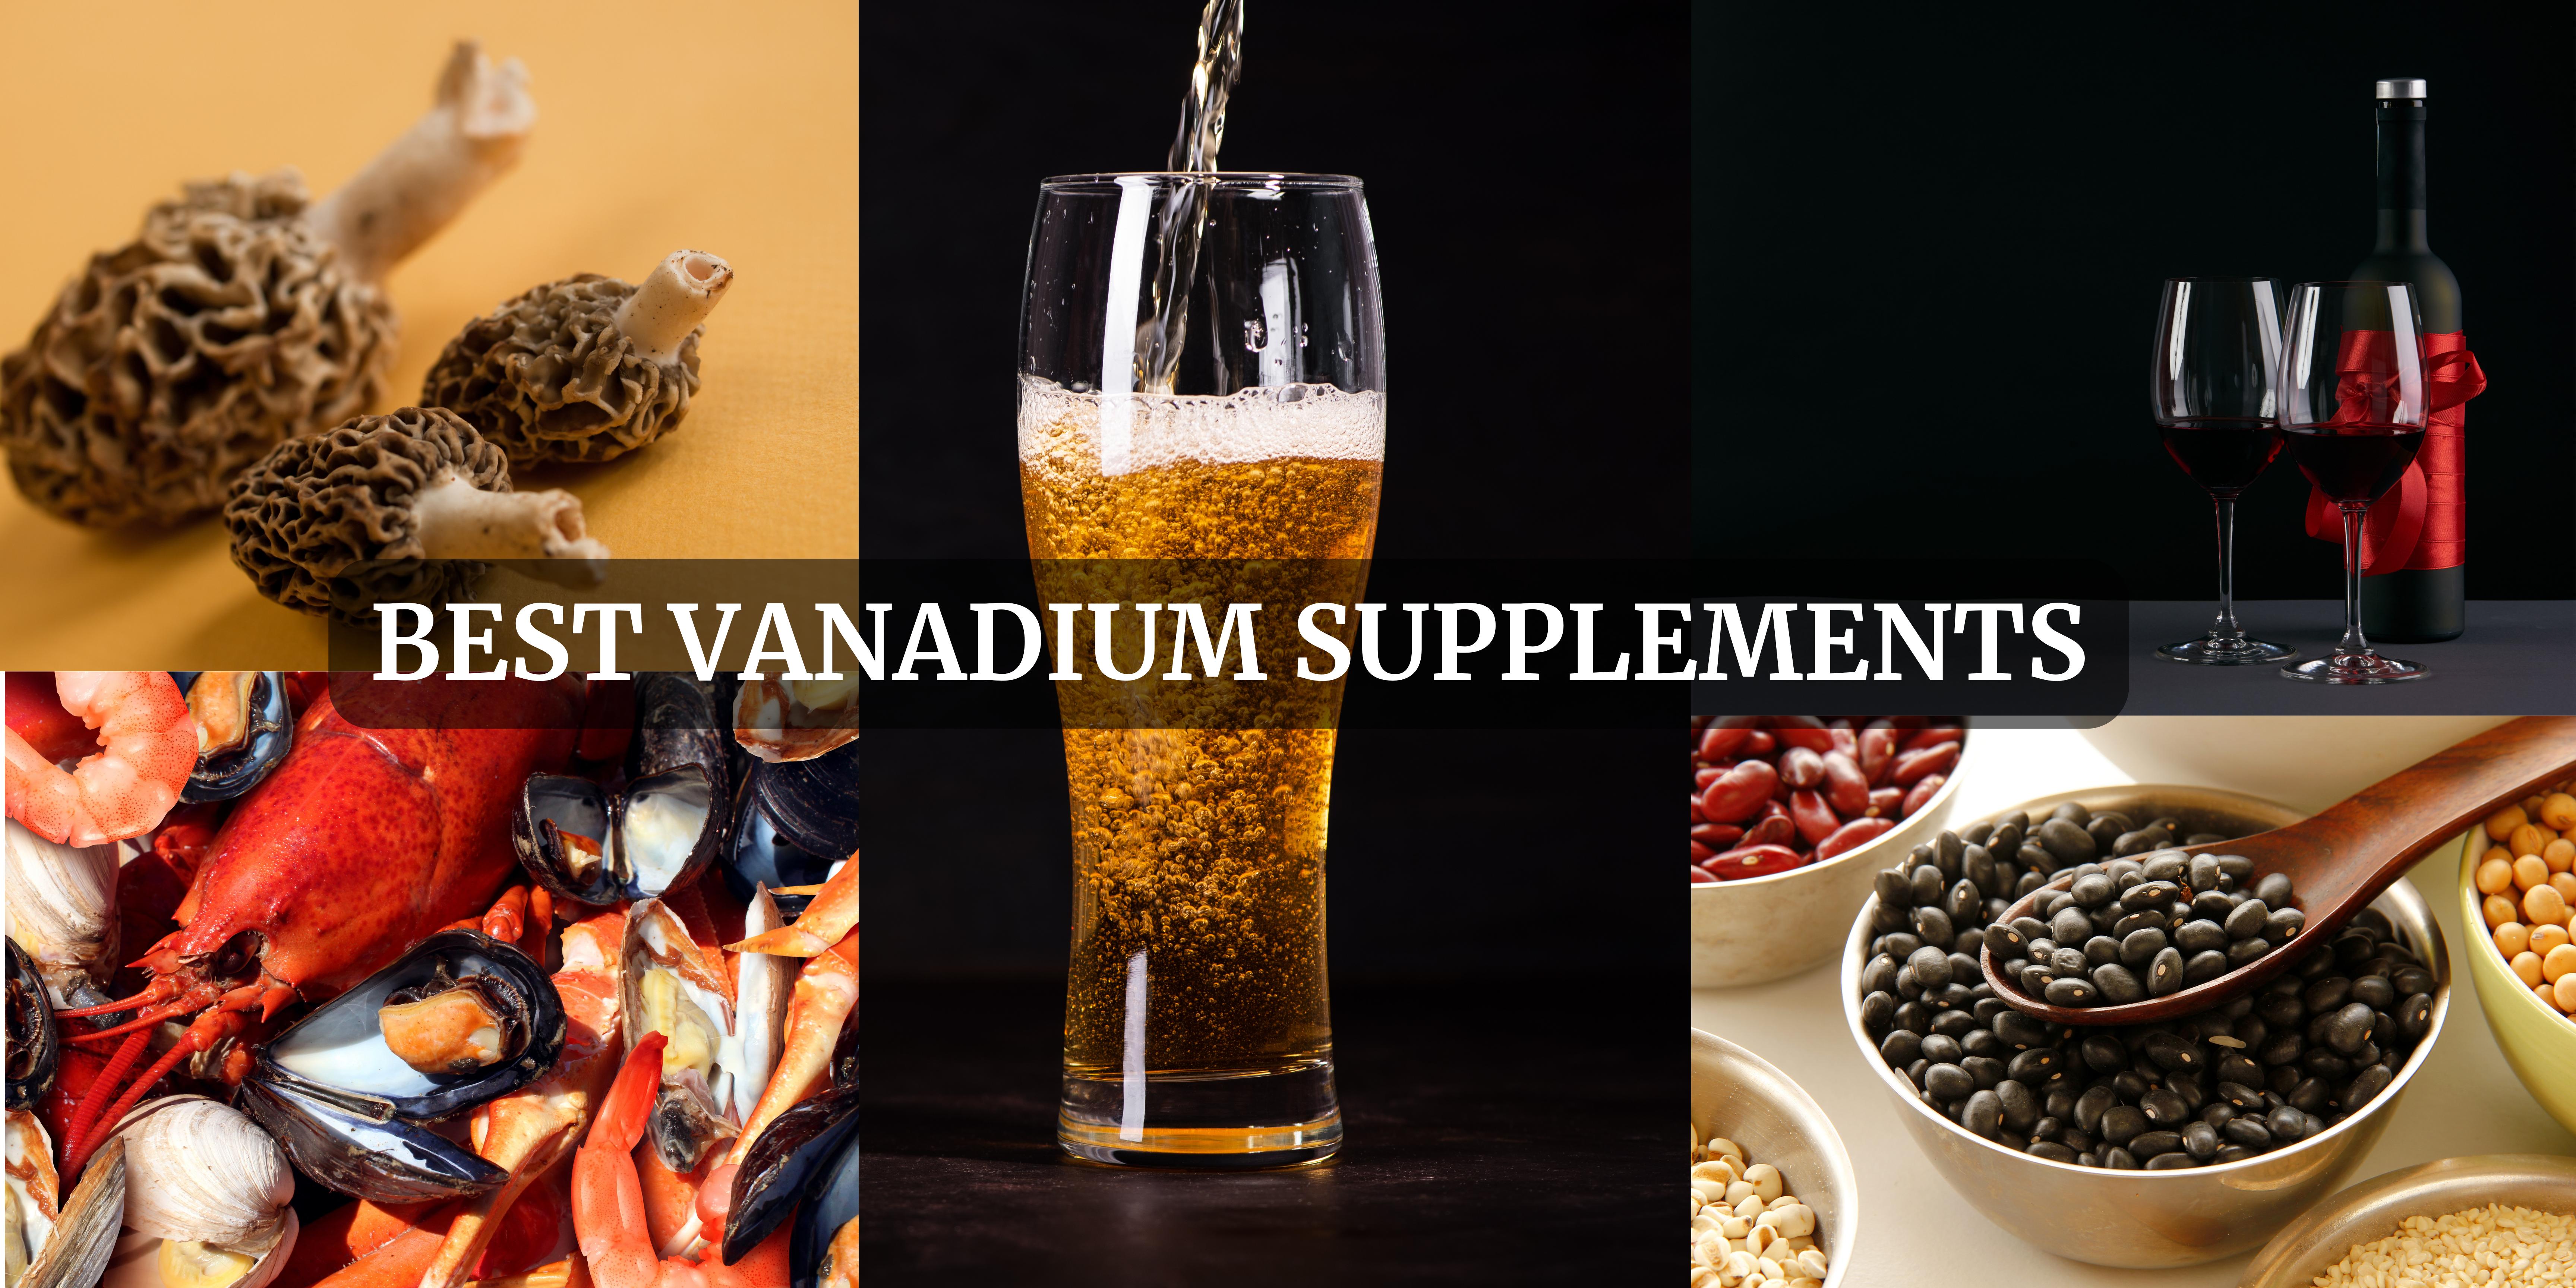 Vanadium Supplements in Sweden